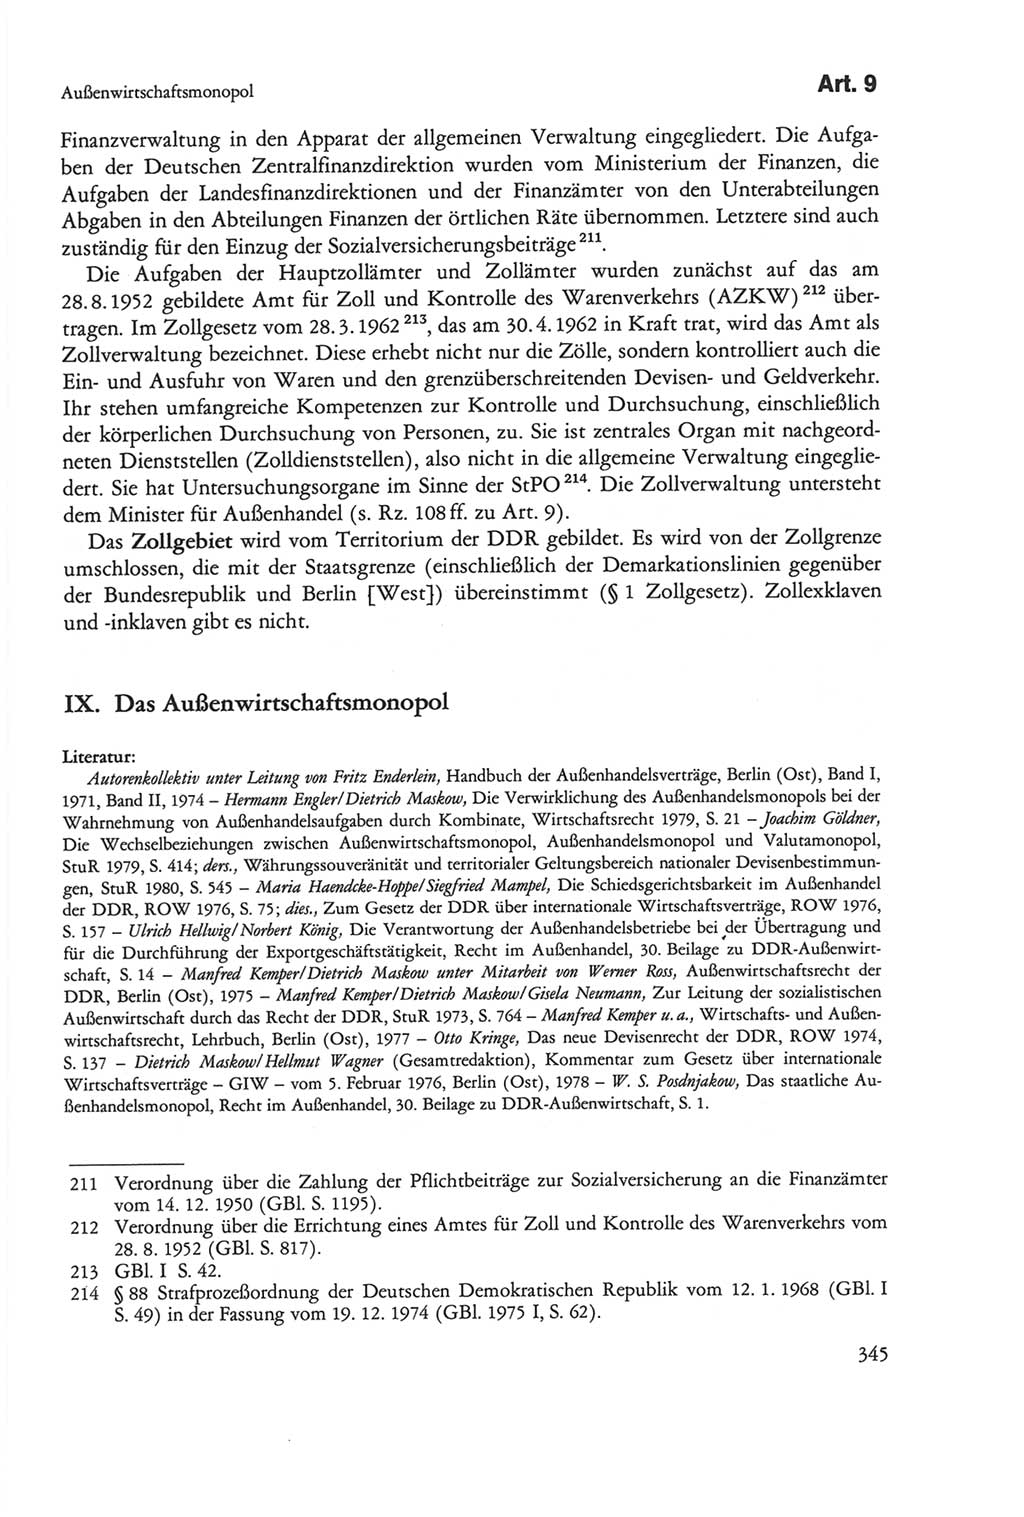 Die sozialistische Verfassung der Deutschen Demokratischen Republik (DDR), Kommentar 1982, Seite 345 (Soz. Verf. DDR Komm. 1982, S. 345)